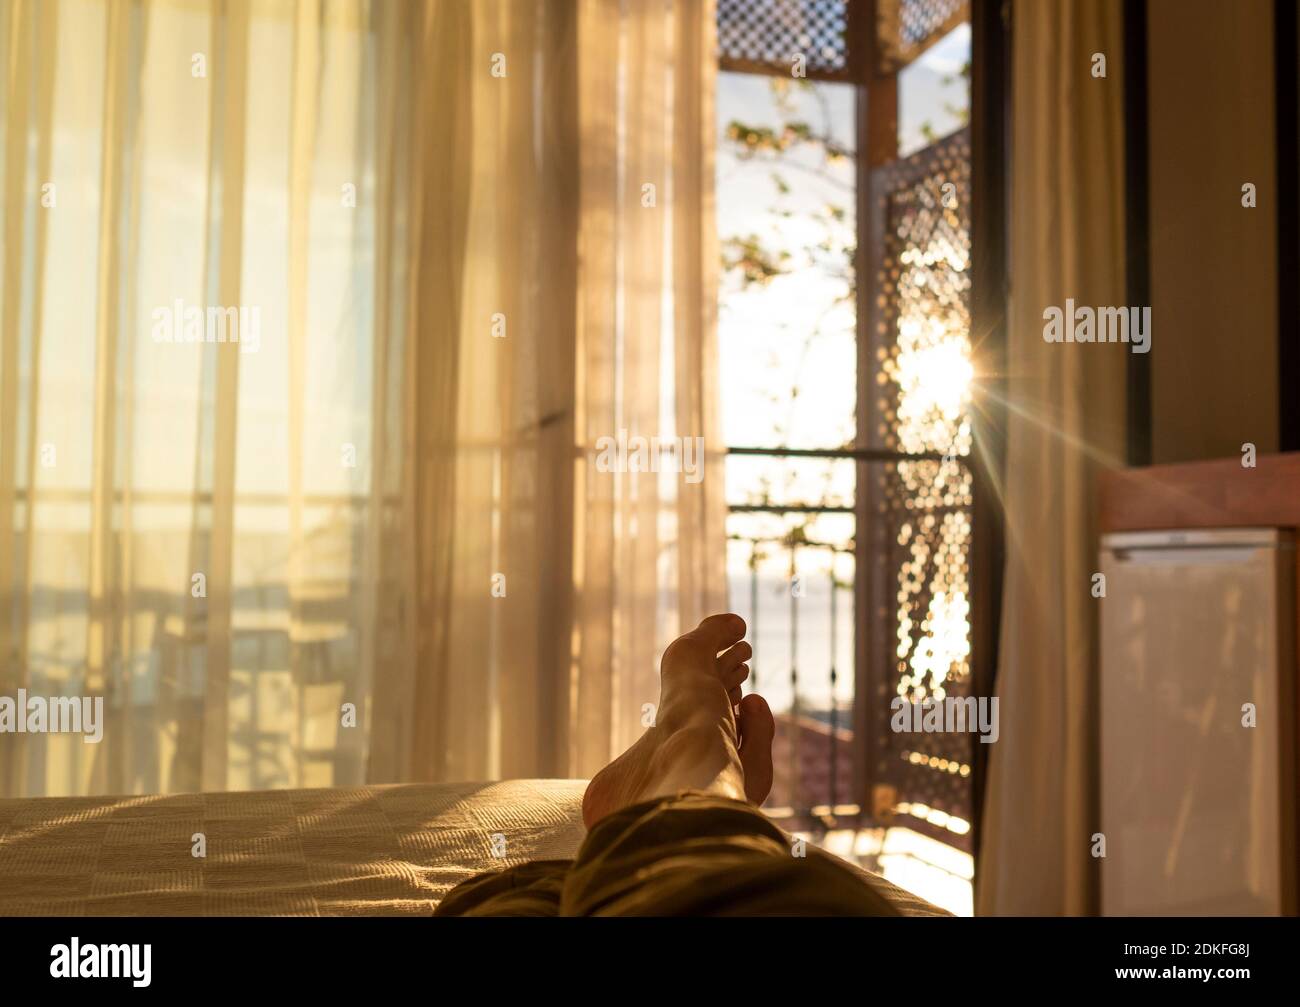 Liegen und Entspannen im Bett gegenüber einem Fenster bei Sonnenuntergang  Stockfotografie - Alamy